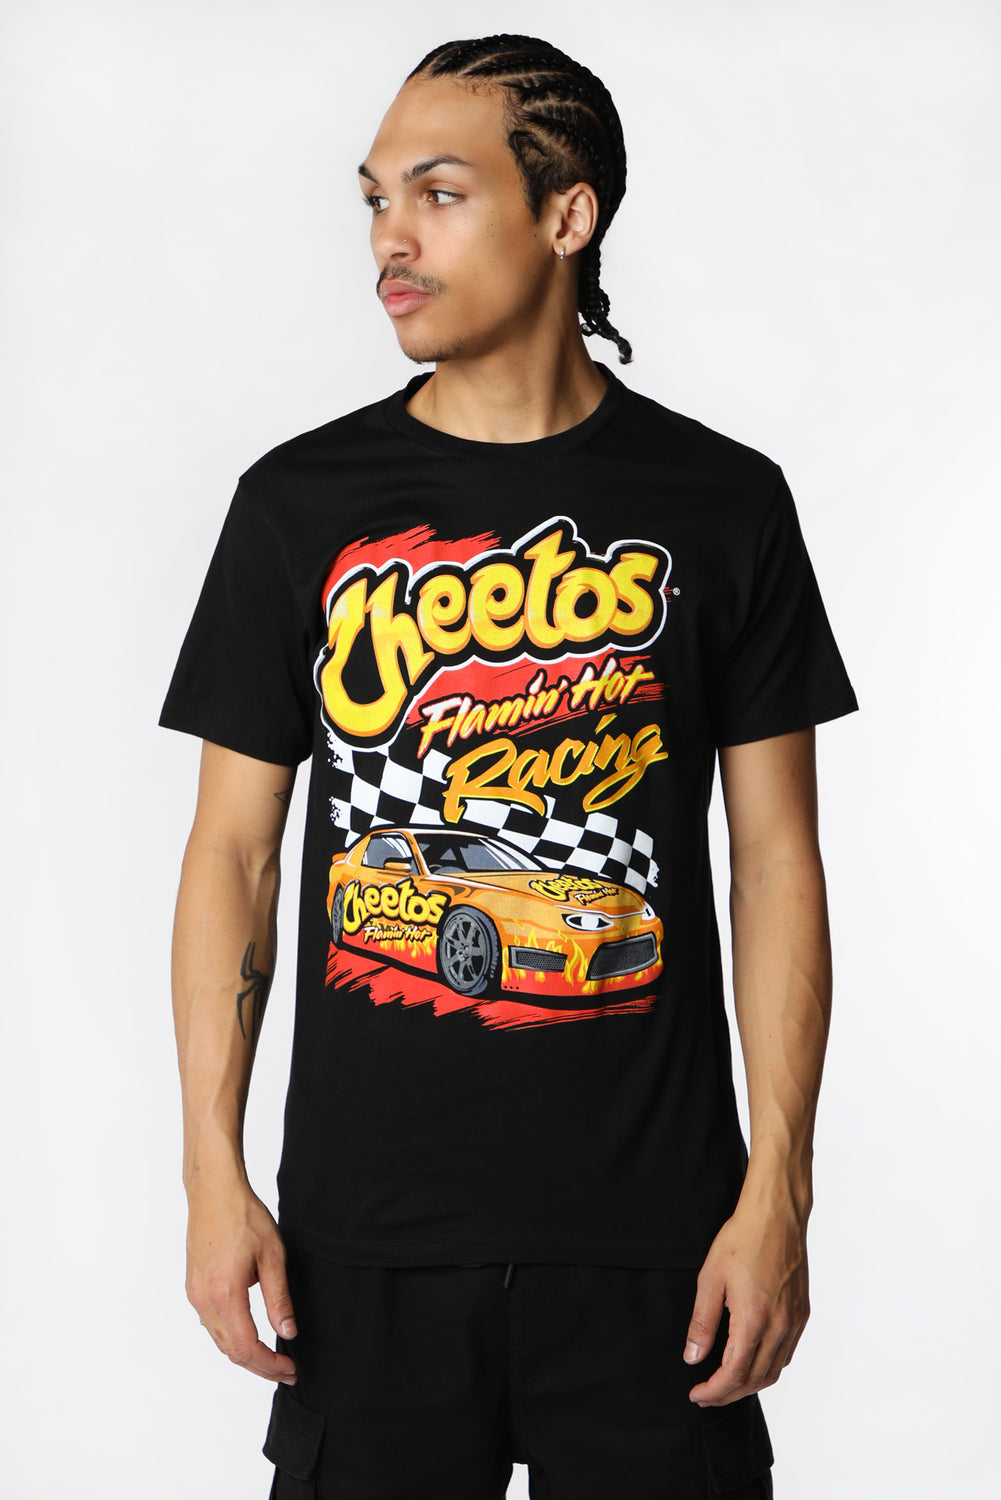 Mens Cheetos Flamin' Hot Racing T-Shirt Mens Cheetos Flamin' Hot Racing T-Shirt